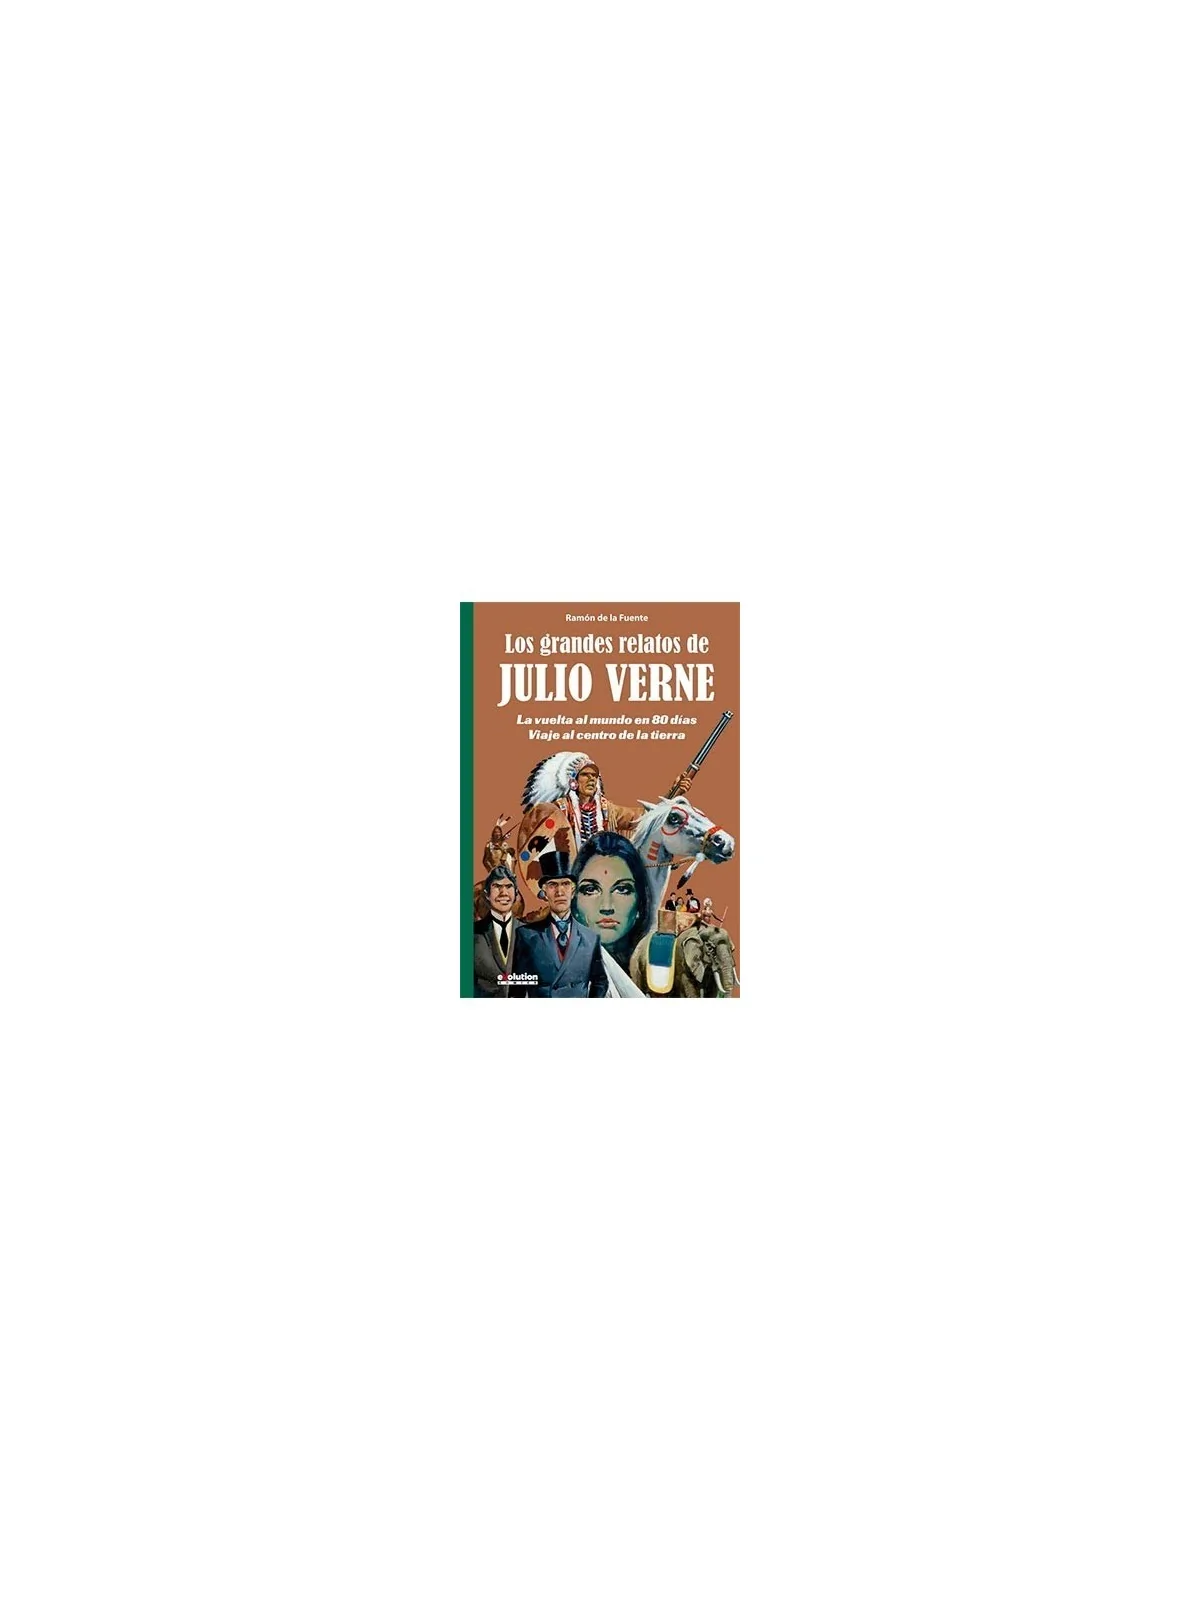 Comprar Los Grandes Relatos de Julio Verne 01 barato al mejor precio 1